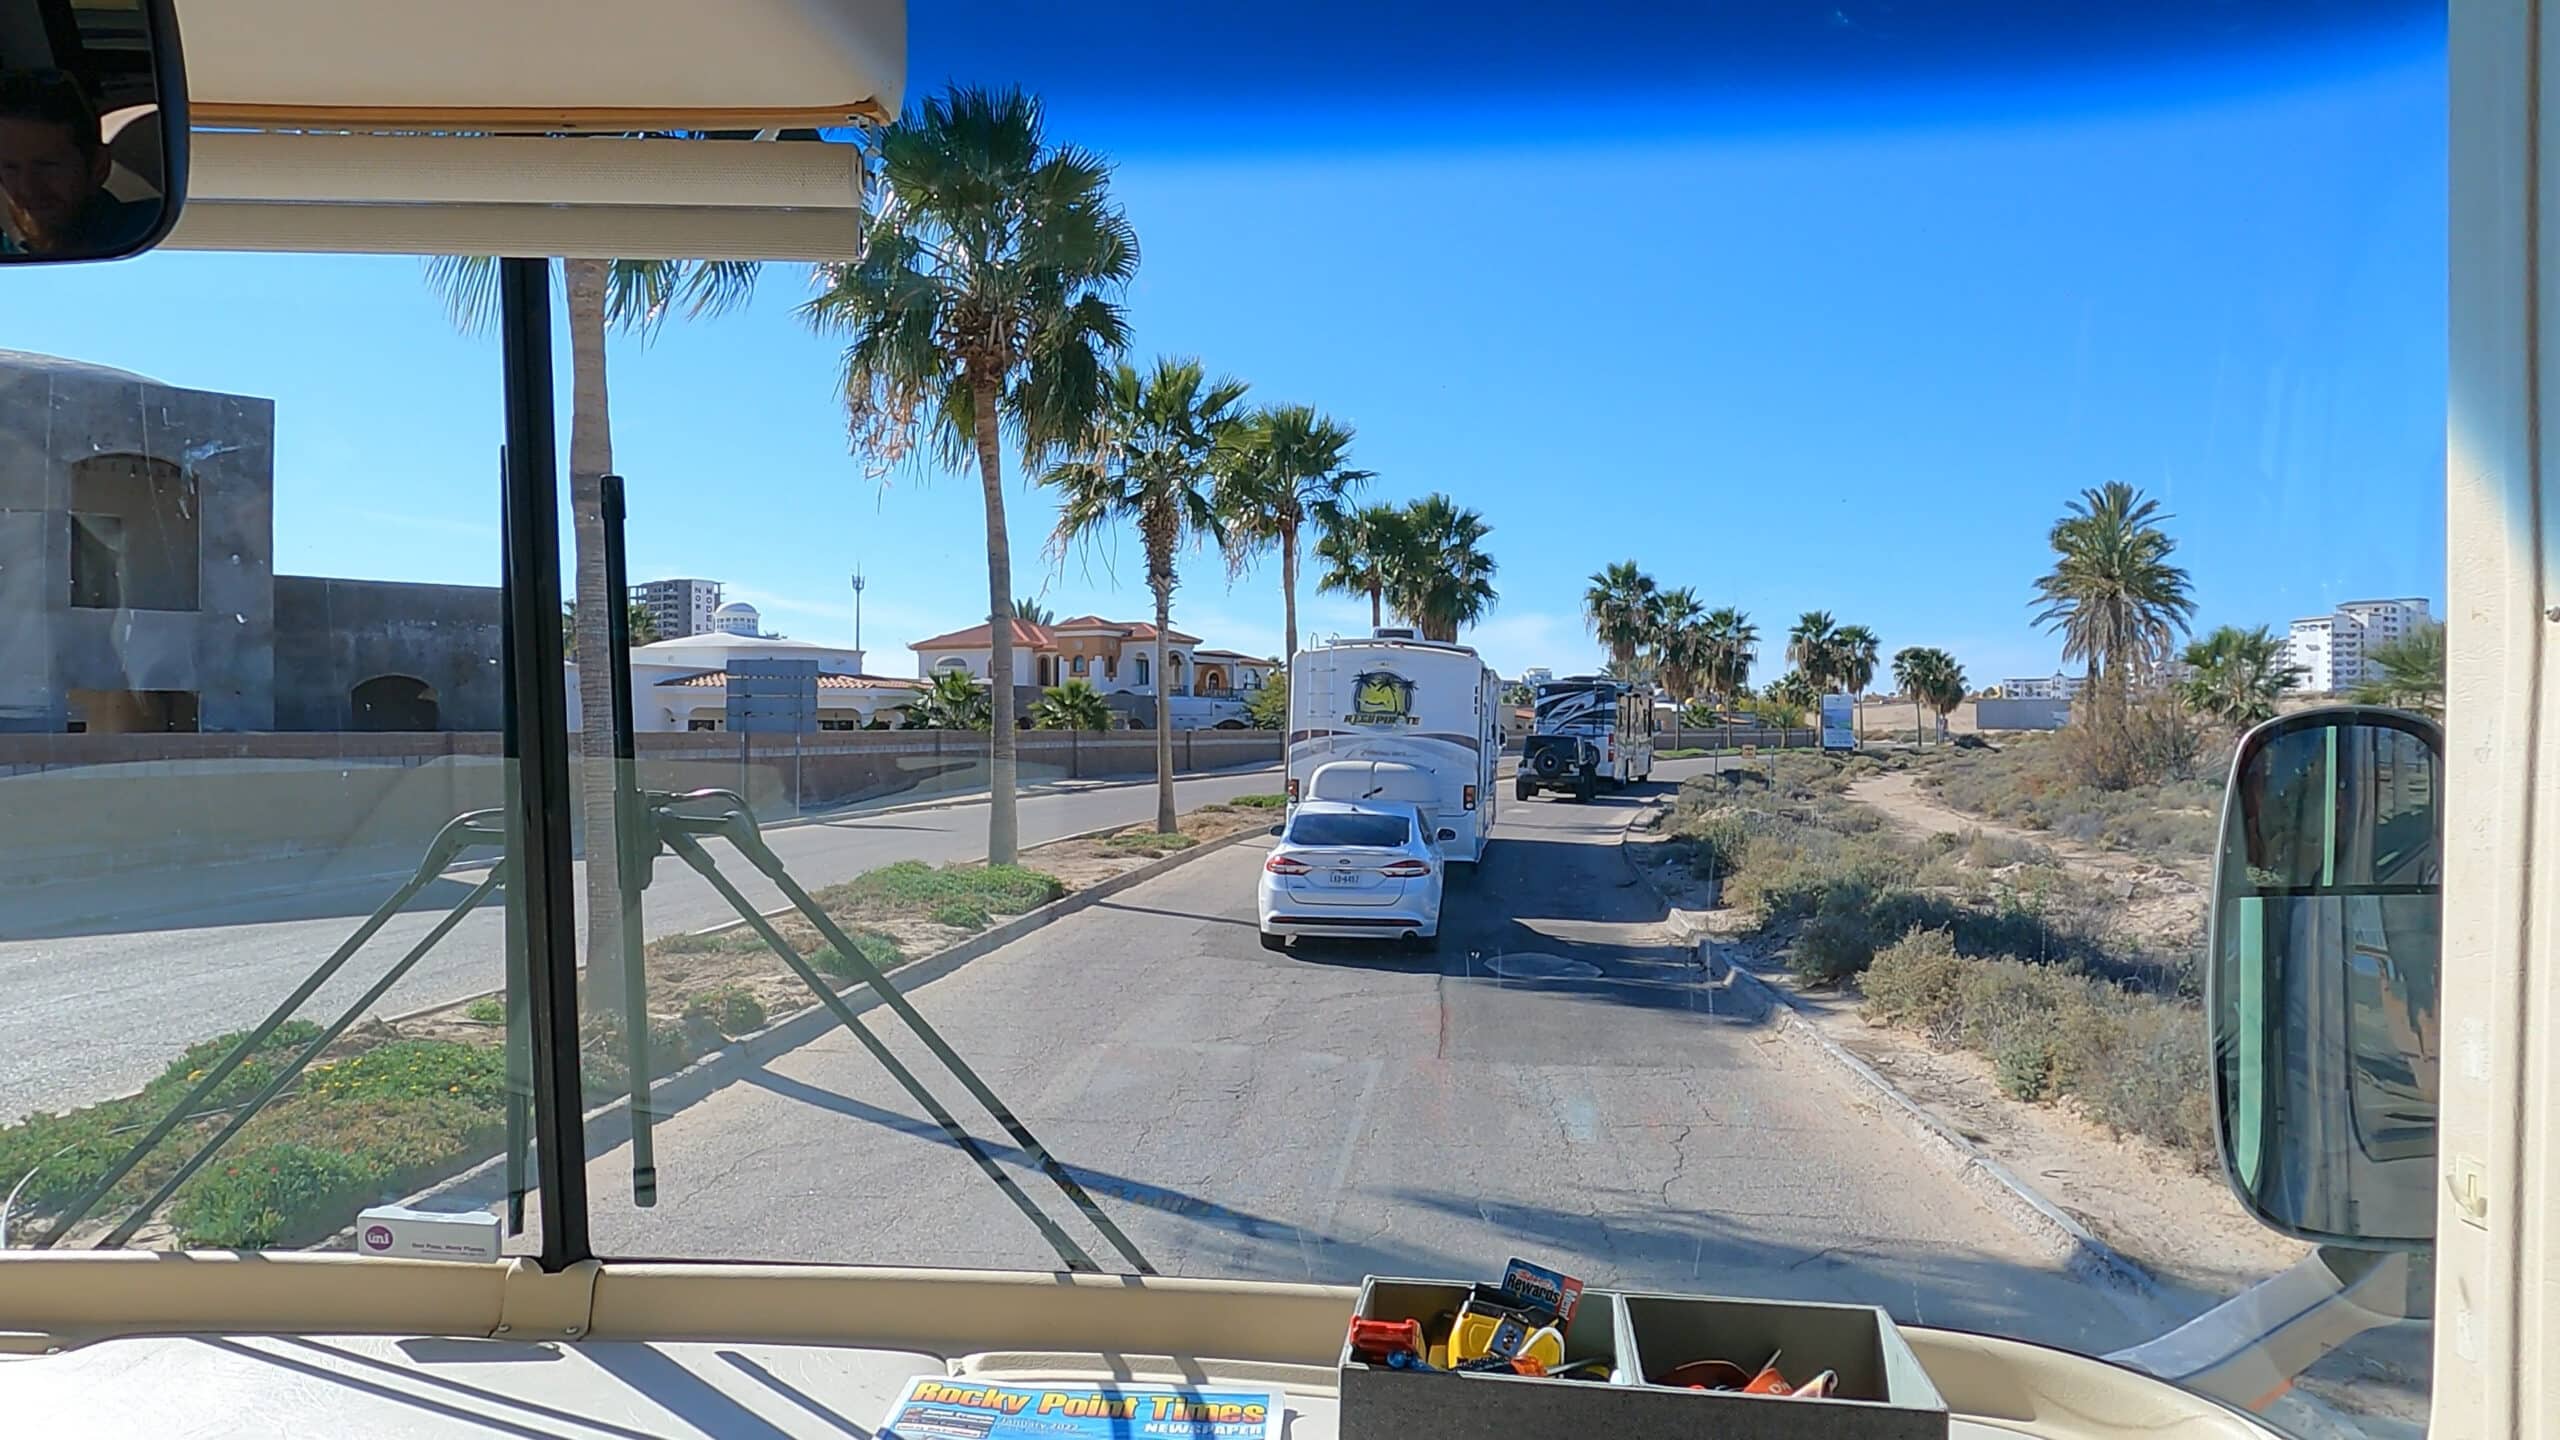 RVs driving through beach town